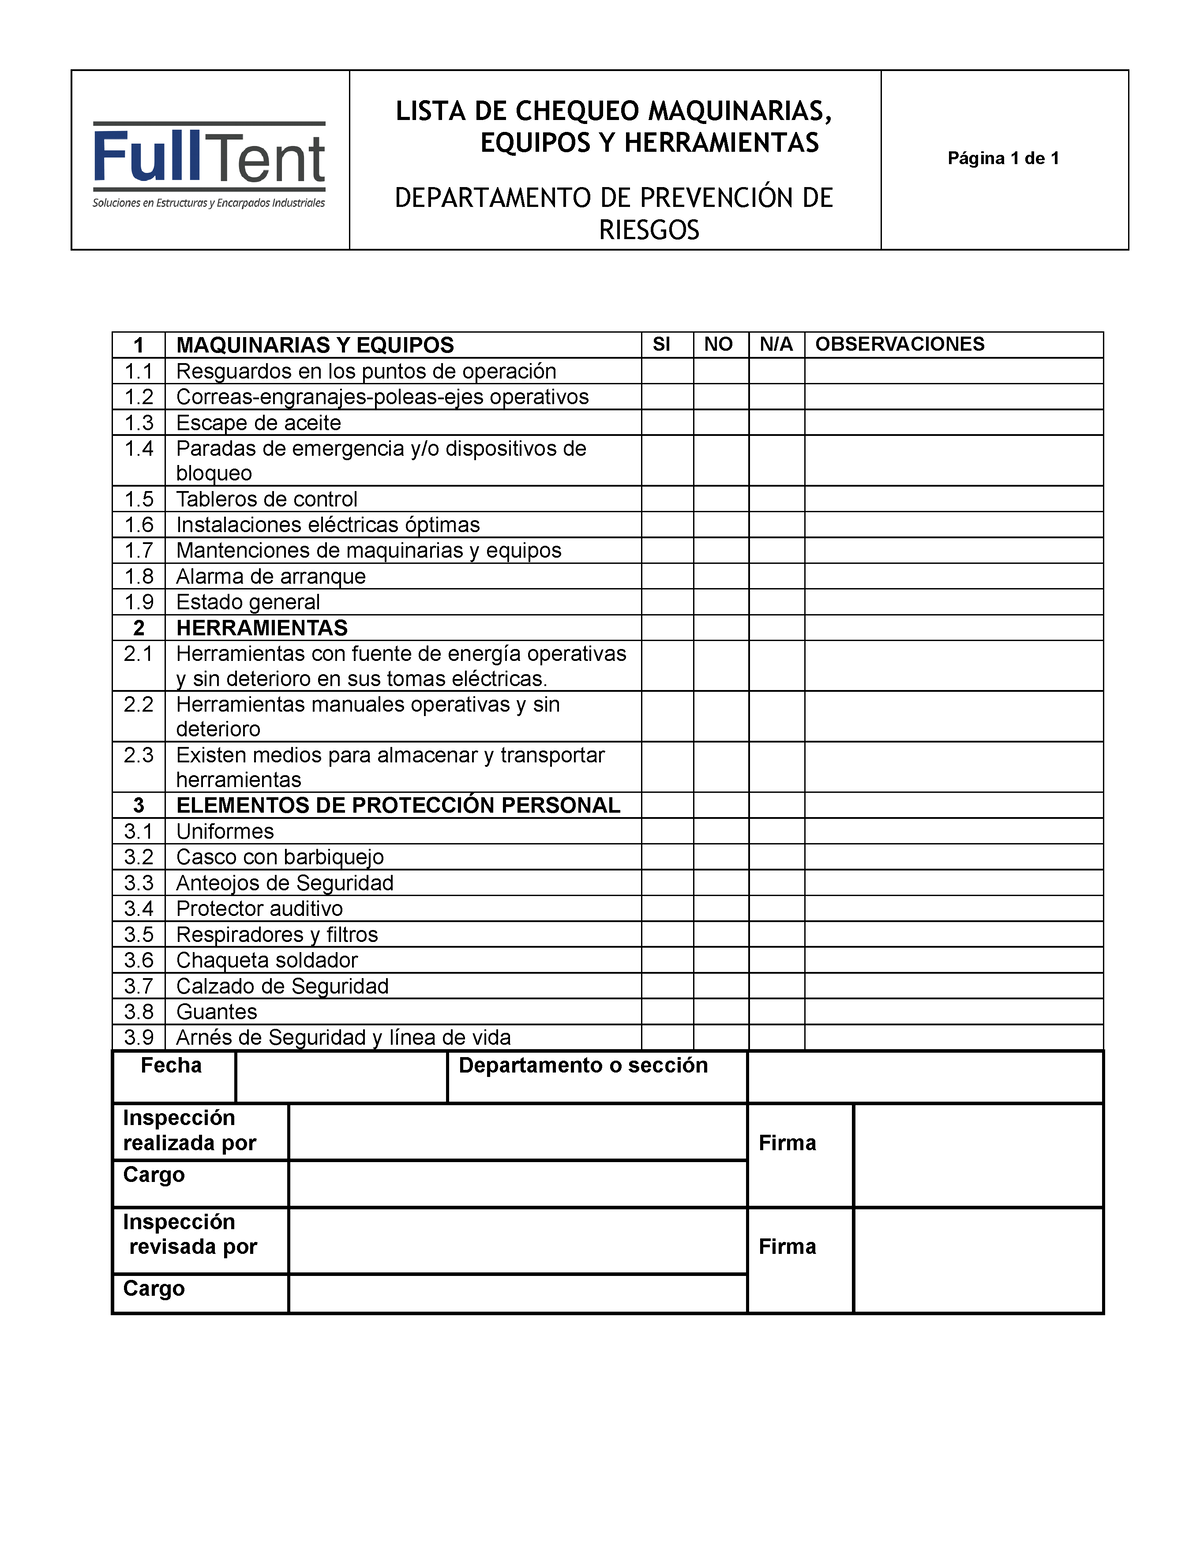 Checklist Maquinarias-Herramientas y Equipos - LISTA DE CHEQUEO  MAQUINARIAS, EQUIPOS Y HERRAMIENTAS - Studocu